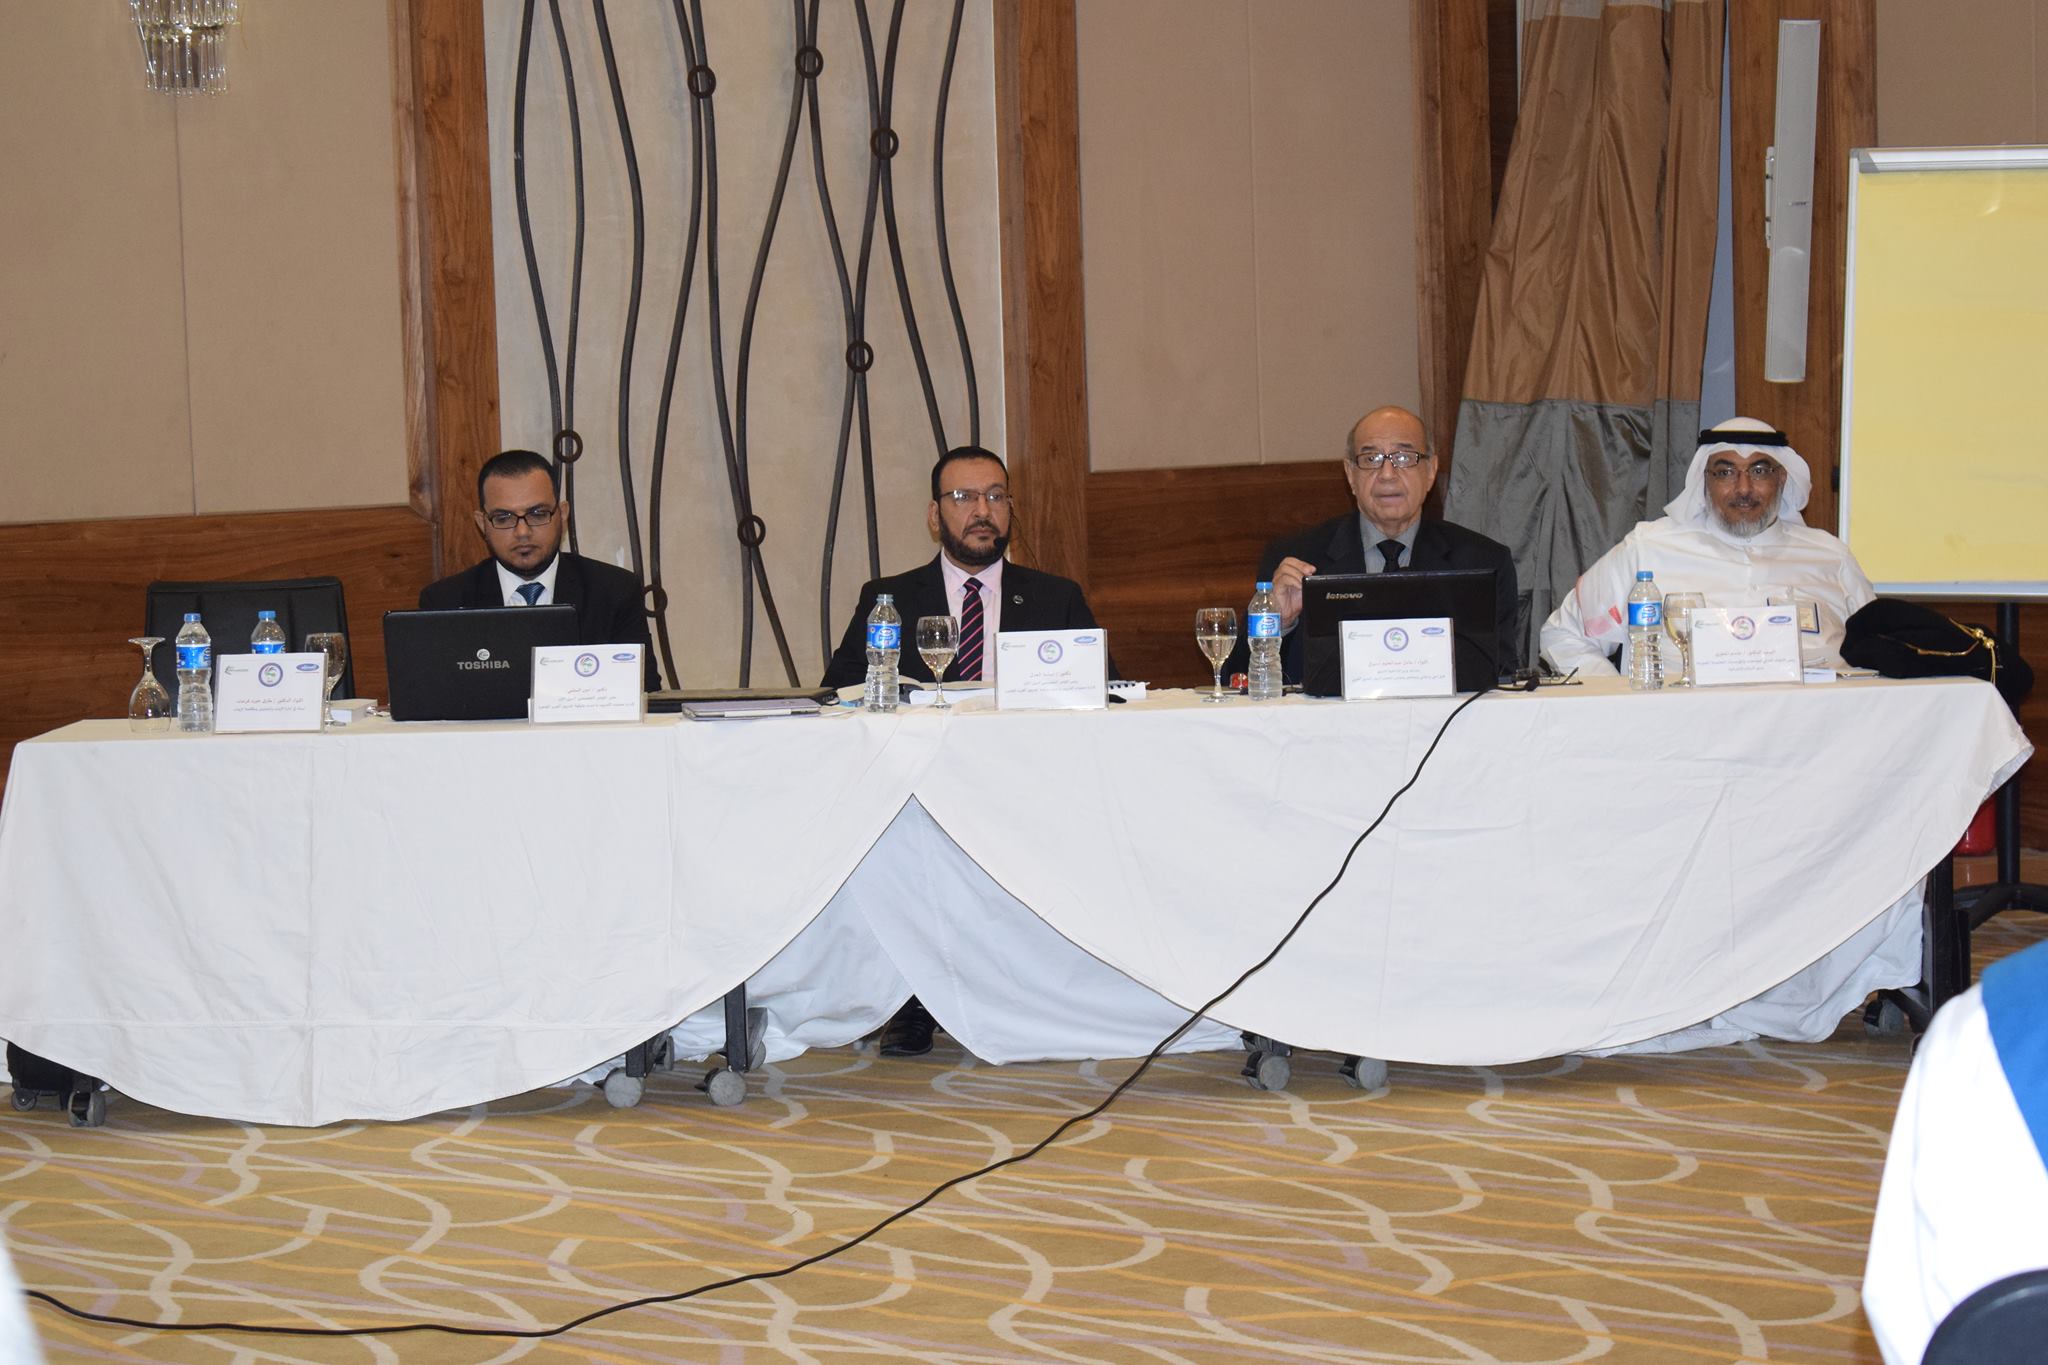   مؤتمر دولى يطالب بإنشاء مجلس عربى موحد لتأهيل المدربين